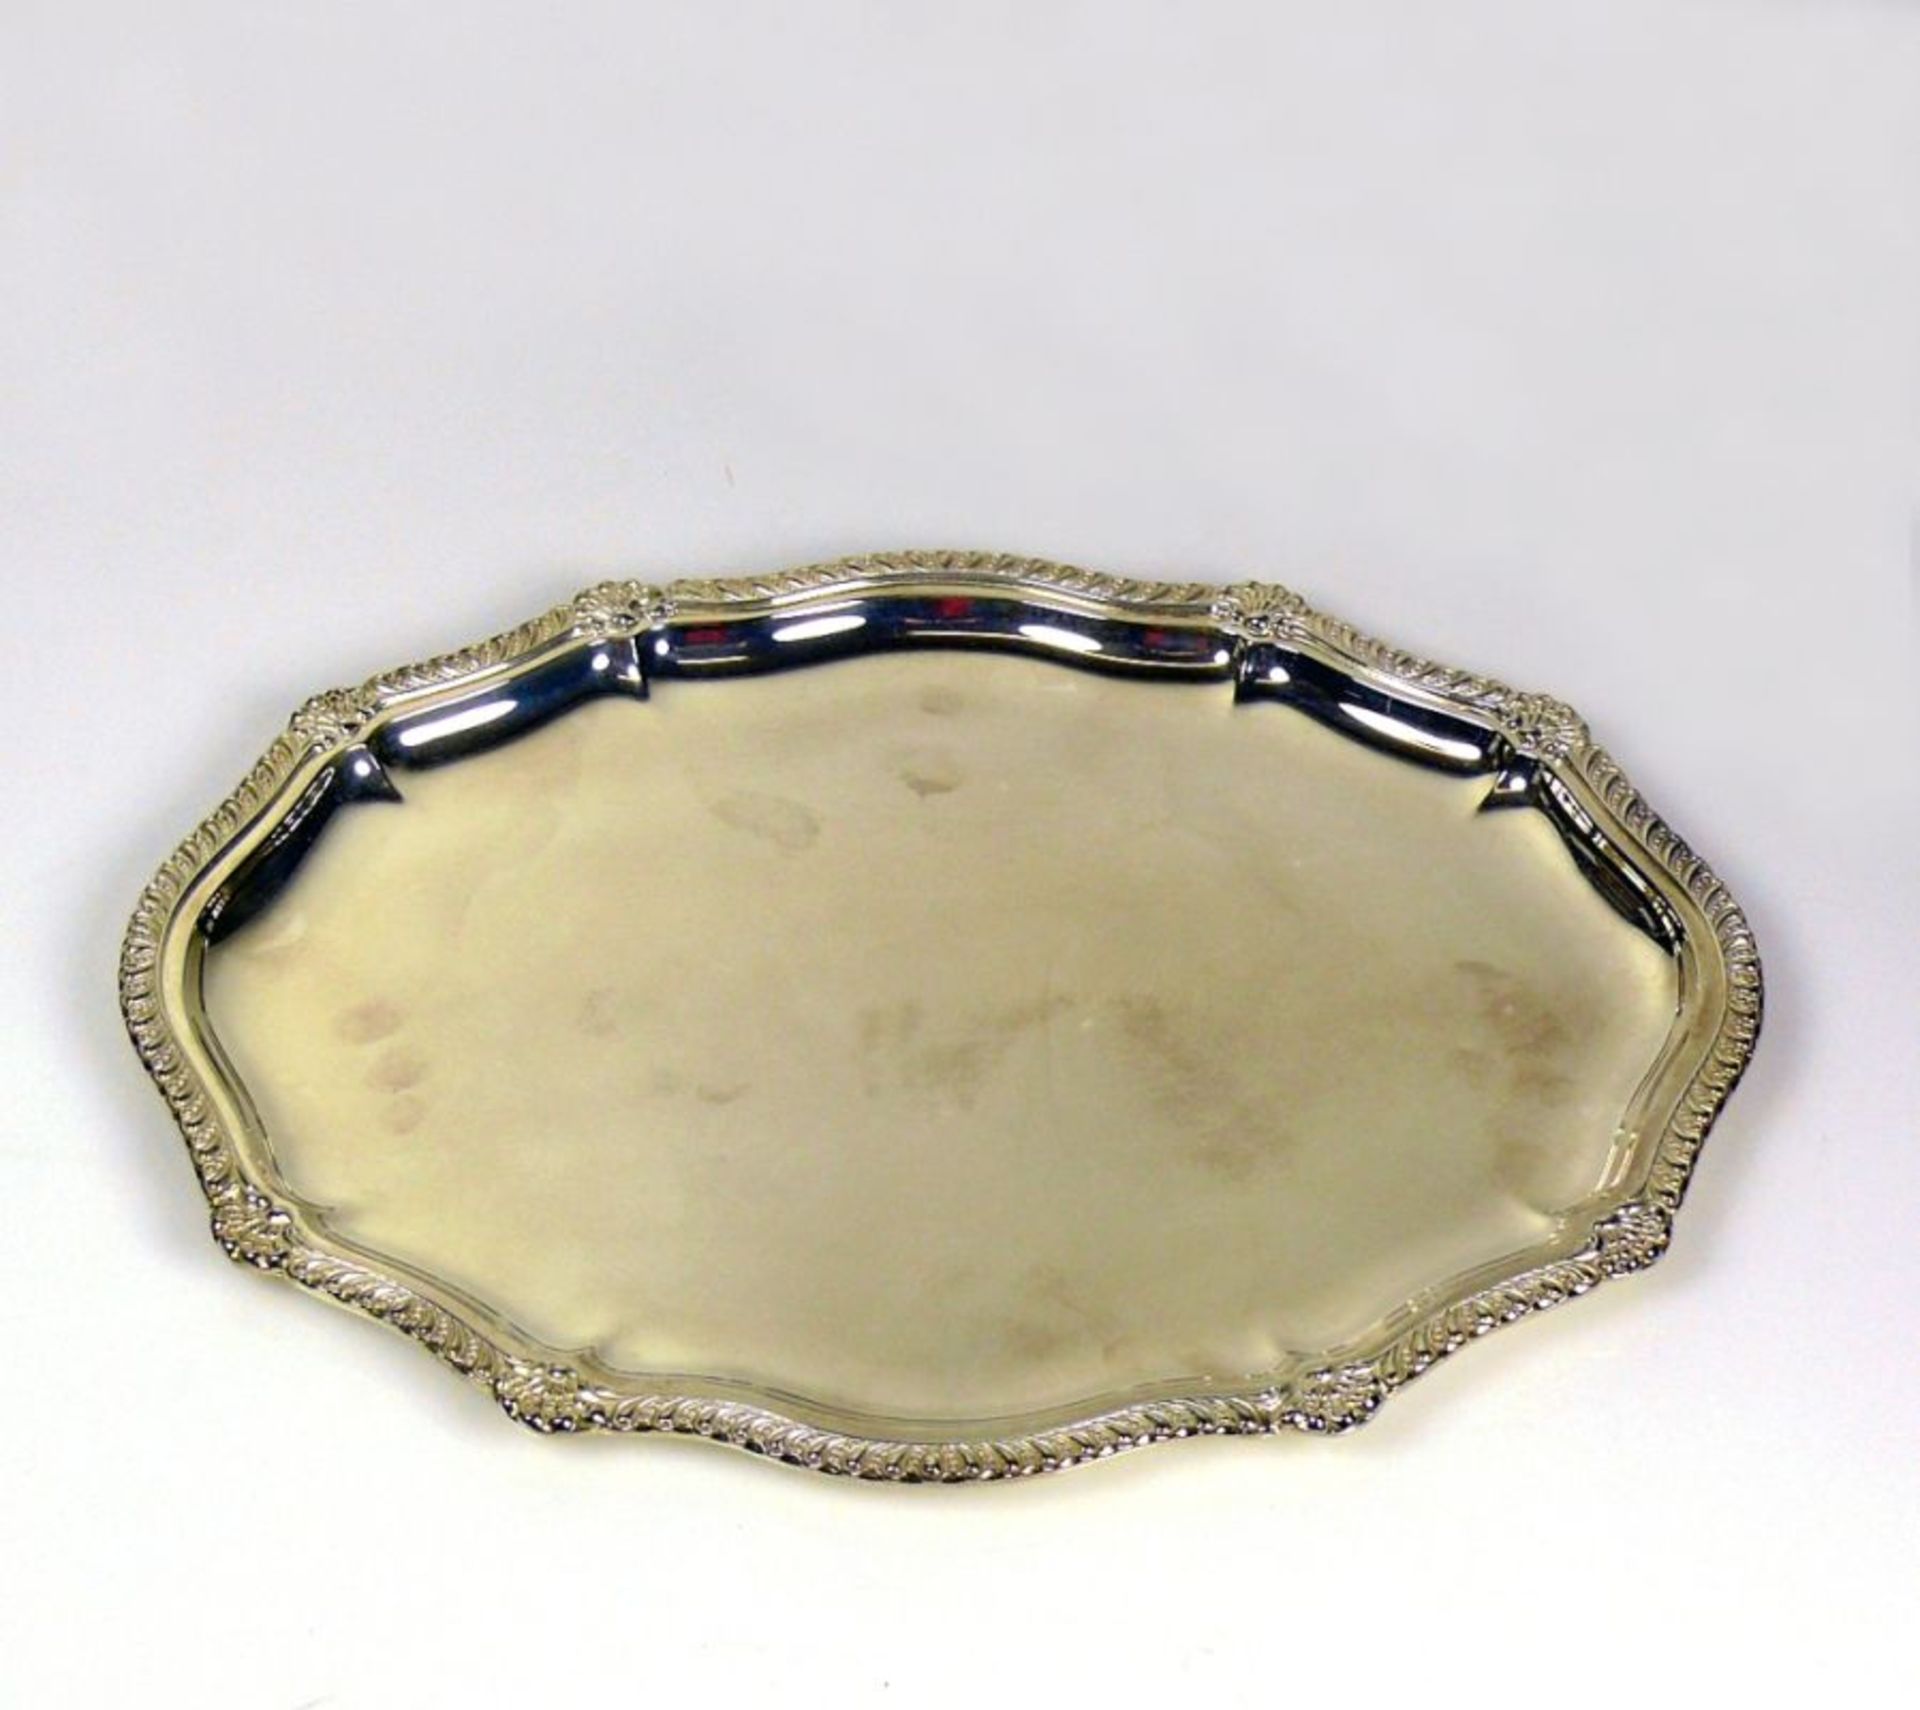 TablettSterlingsilber 925; ovale Form mit geschwungenem und floral verziertem Rand; 573g; 34,5 x